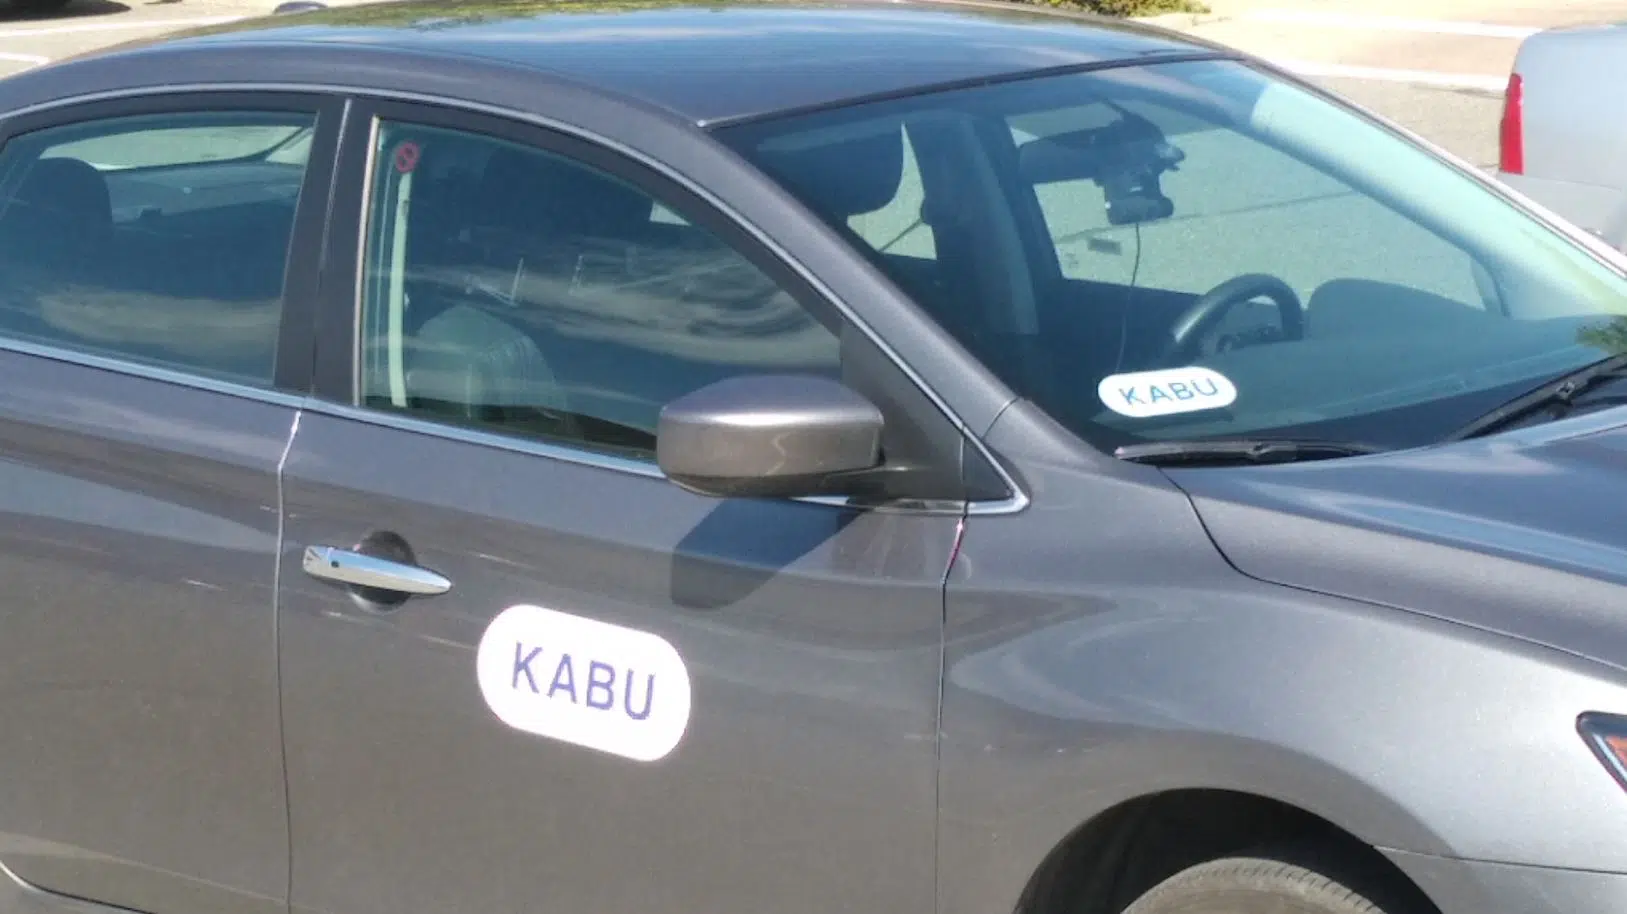 Kabu Ride eyeing summer 2022 re-launch in Kamloops